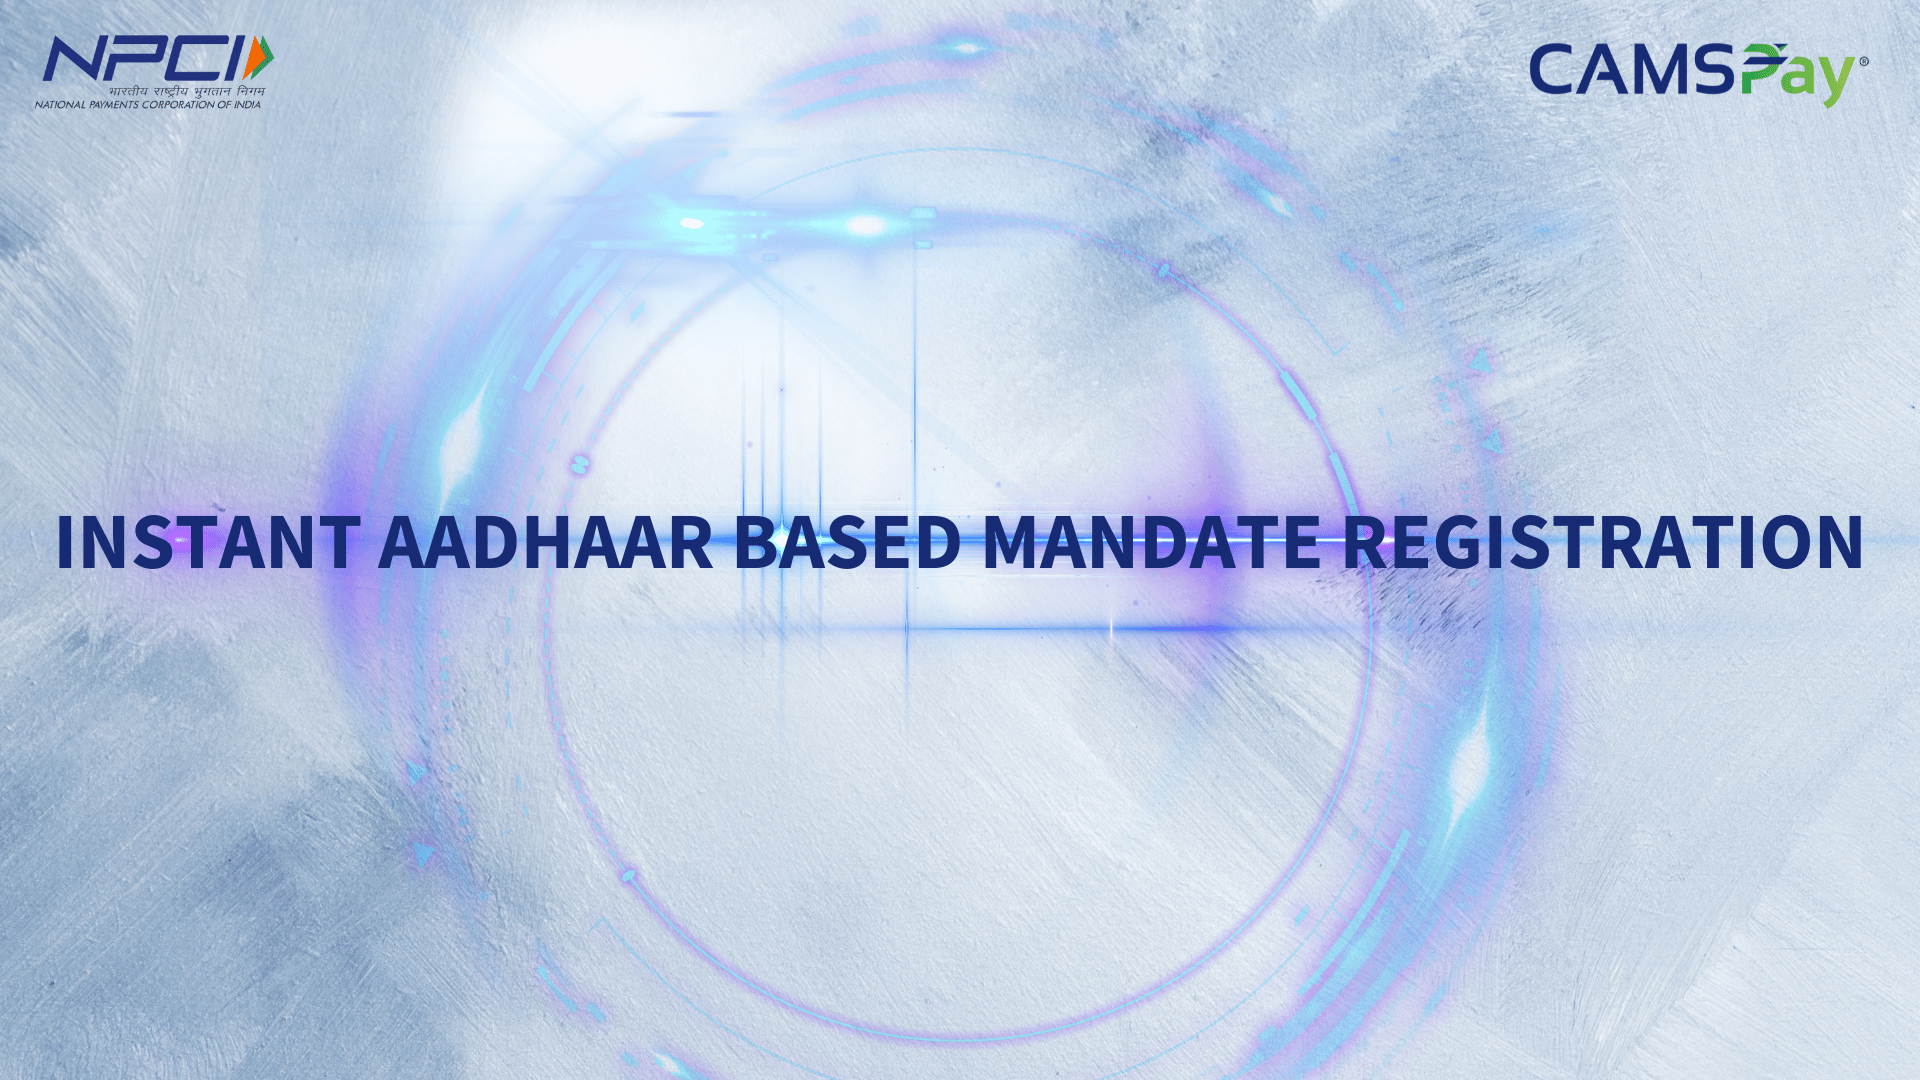 Instant Aadhaar-Based Mandate Registration with CAMSPay